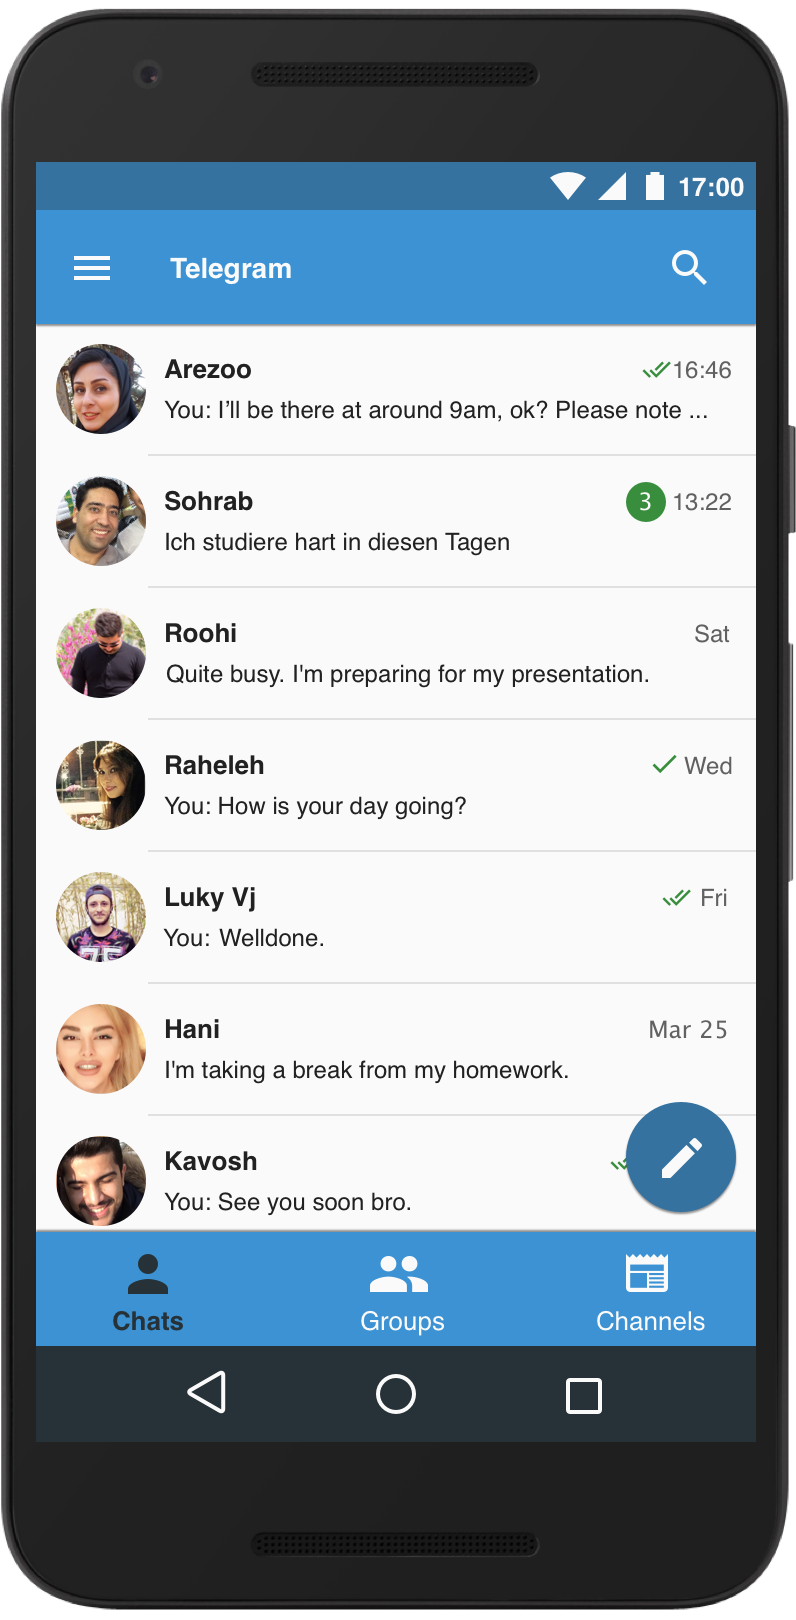 Telegram android app ux material